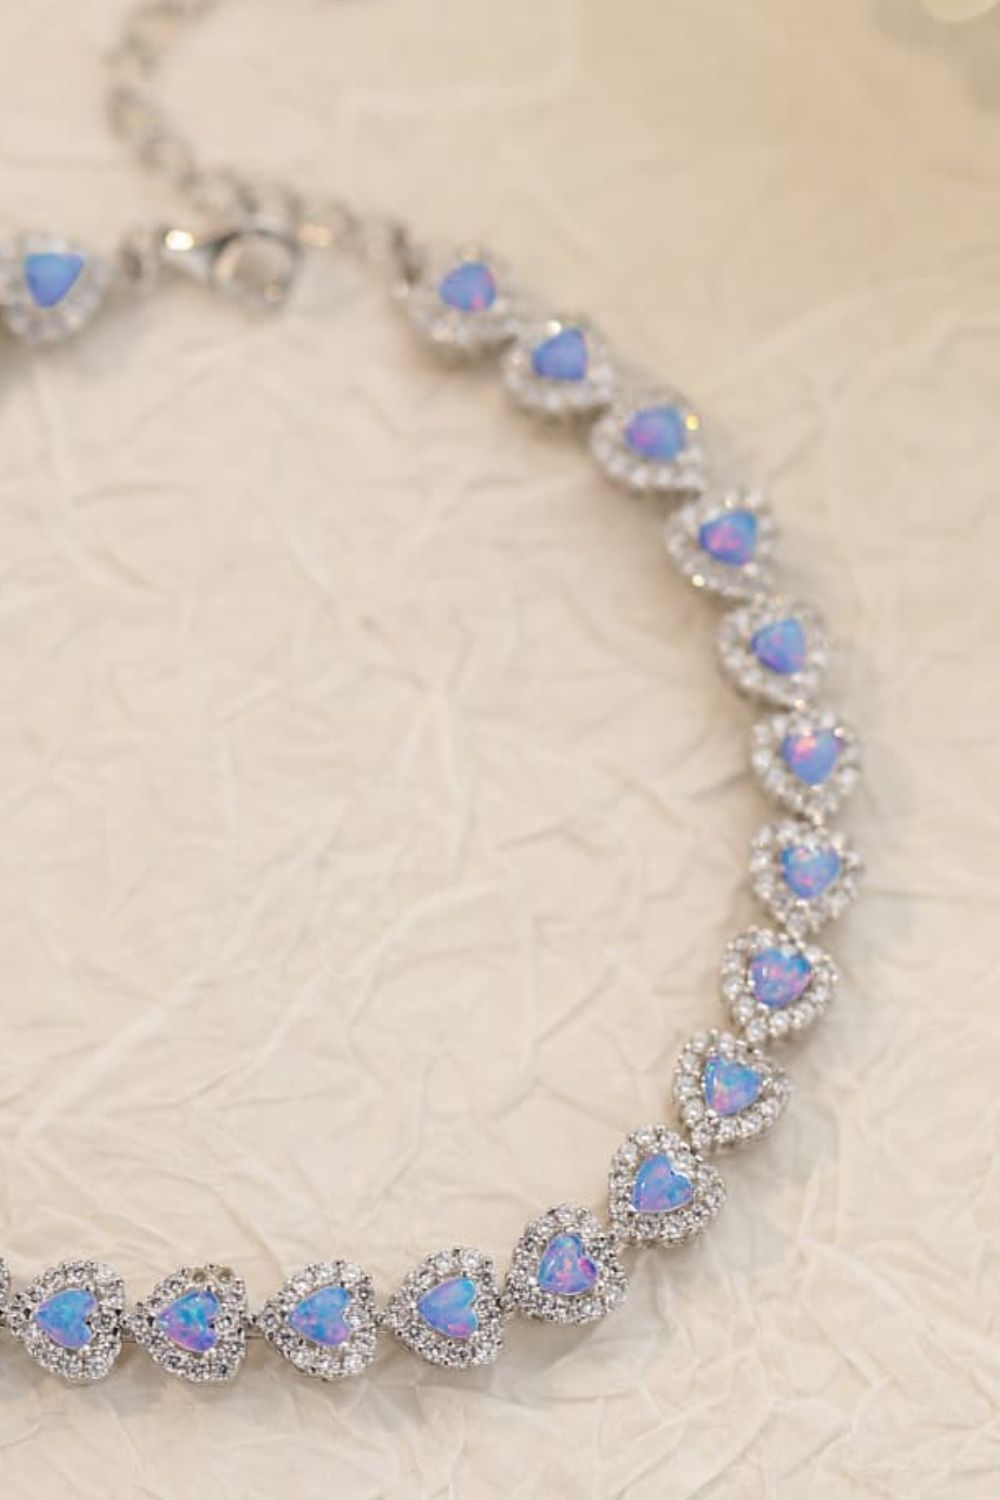 Opal Heart Bracelet by Metopia Designs